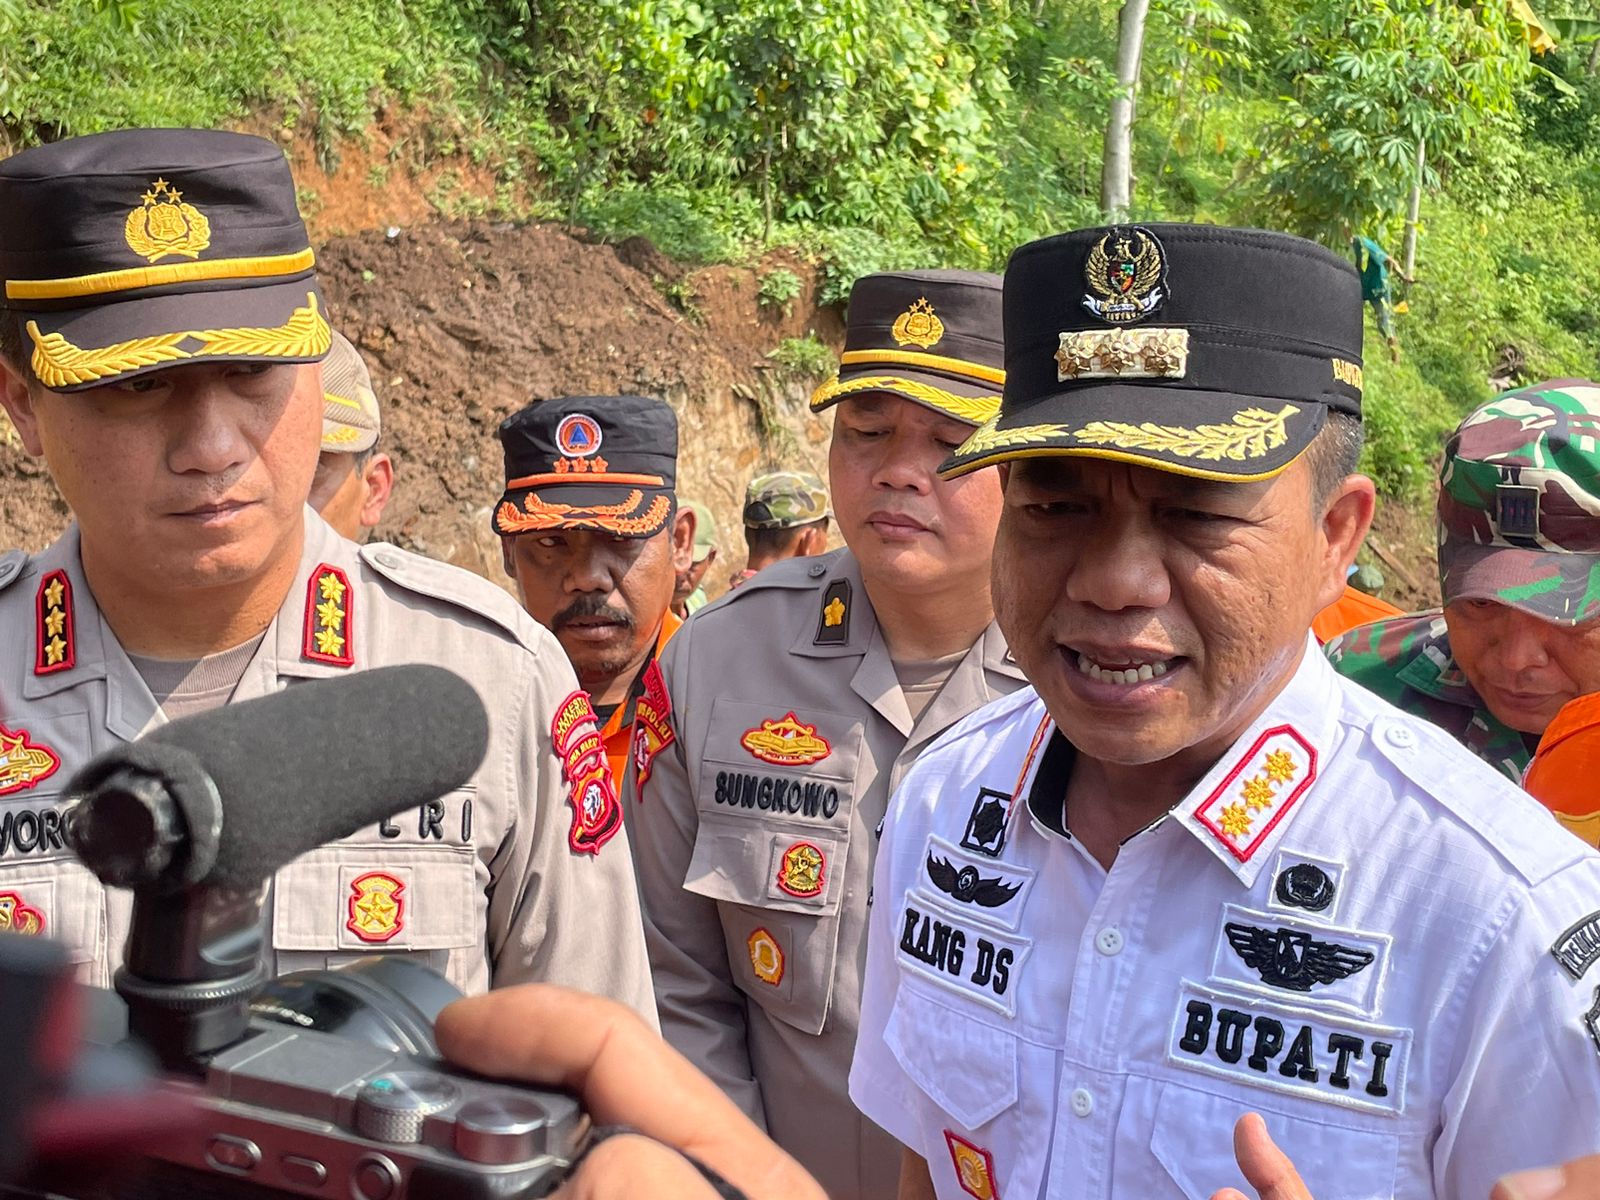 Bupati Bandung Sebut Sejumlah Wilayah di Kabupaten Bandung Alami Bencana Alam. Foto Agi Jabarekspres